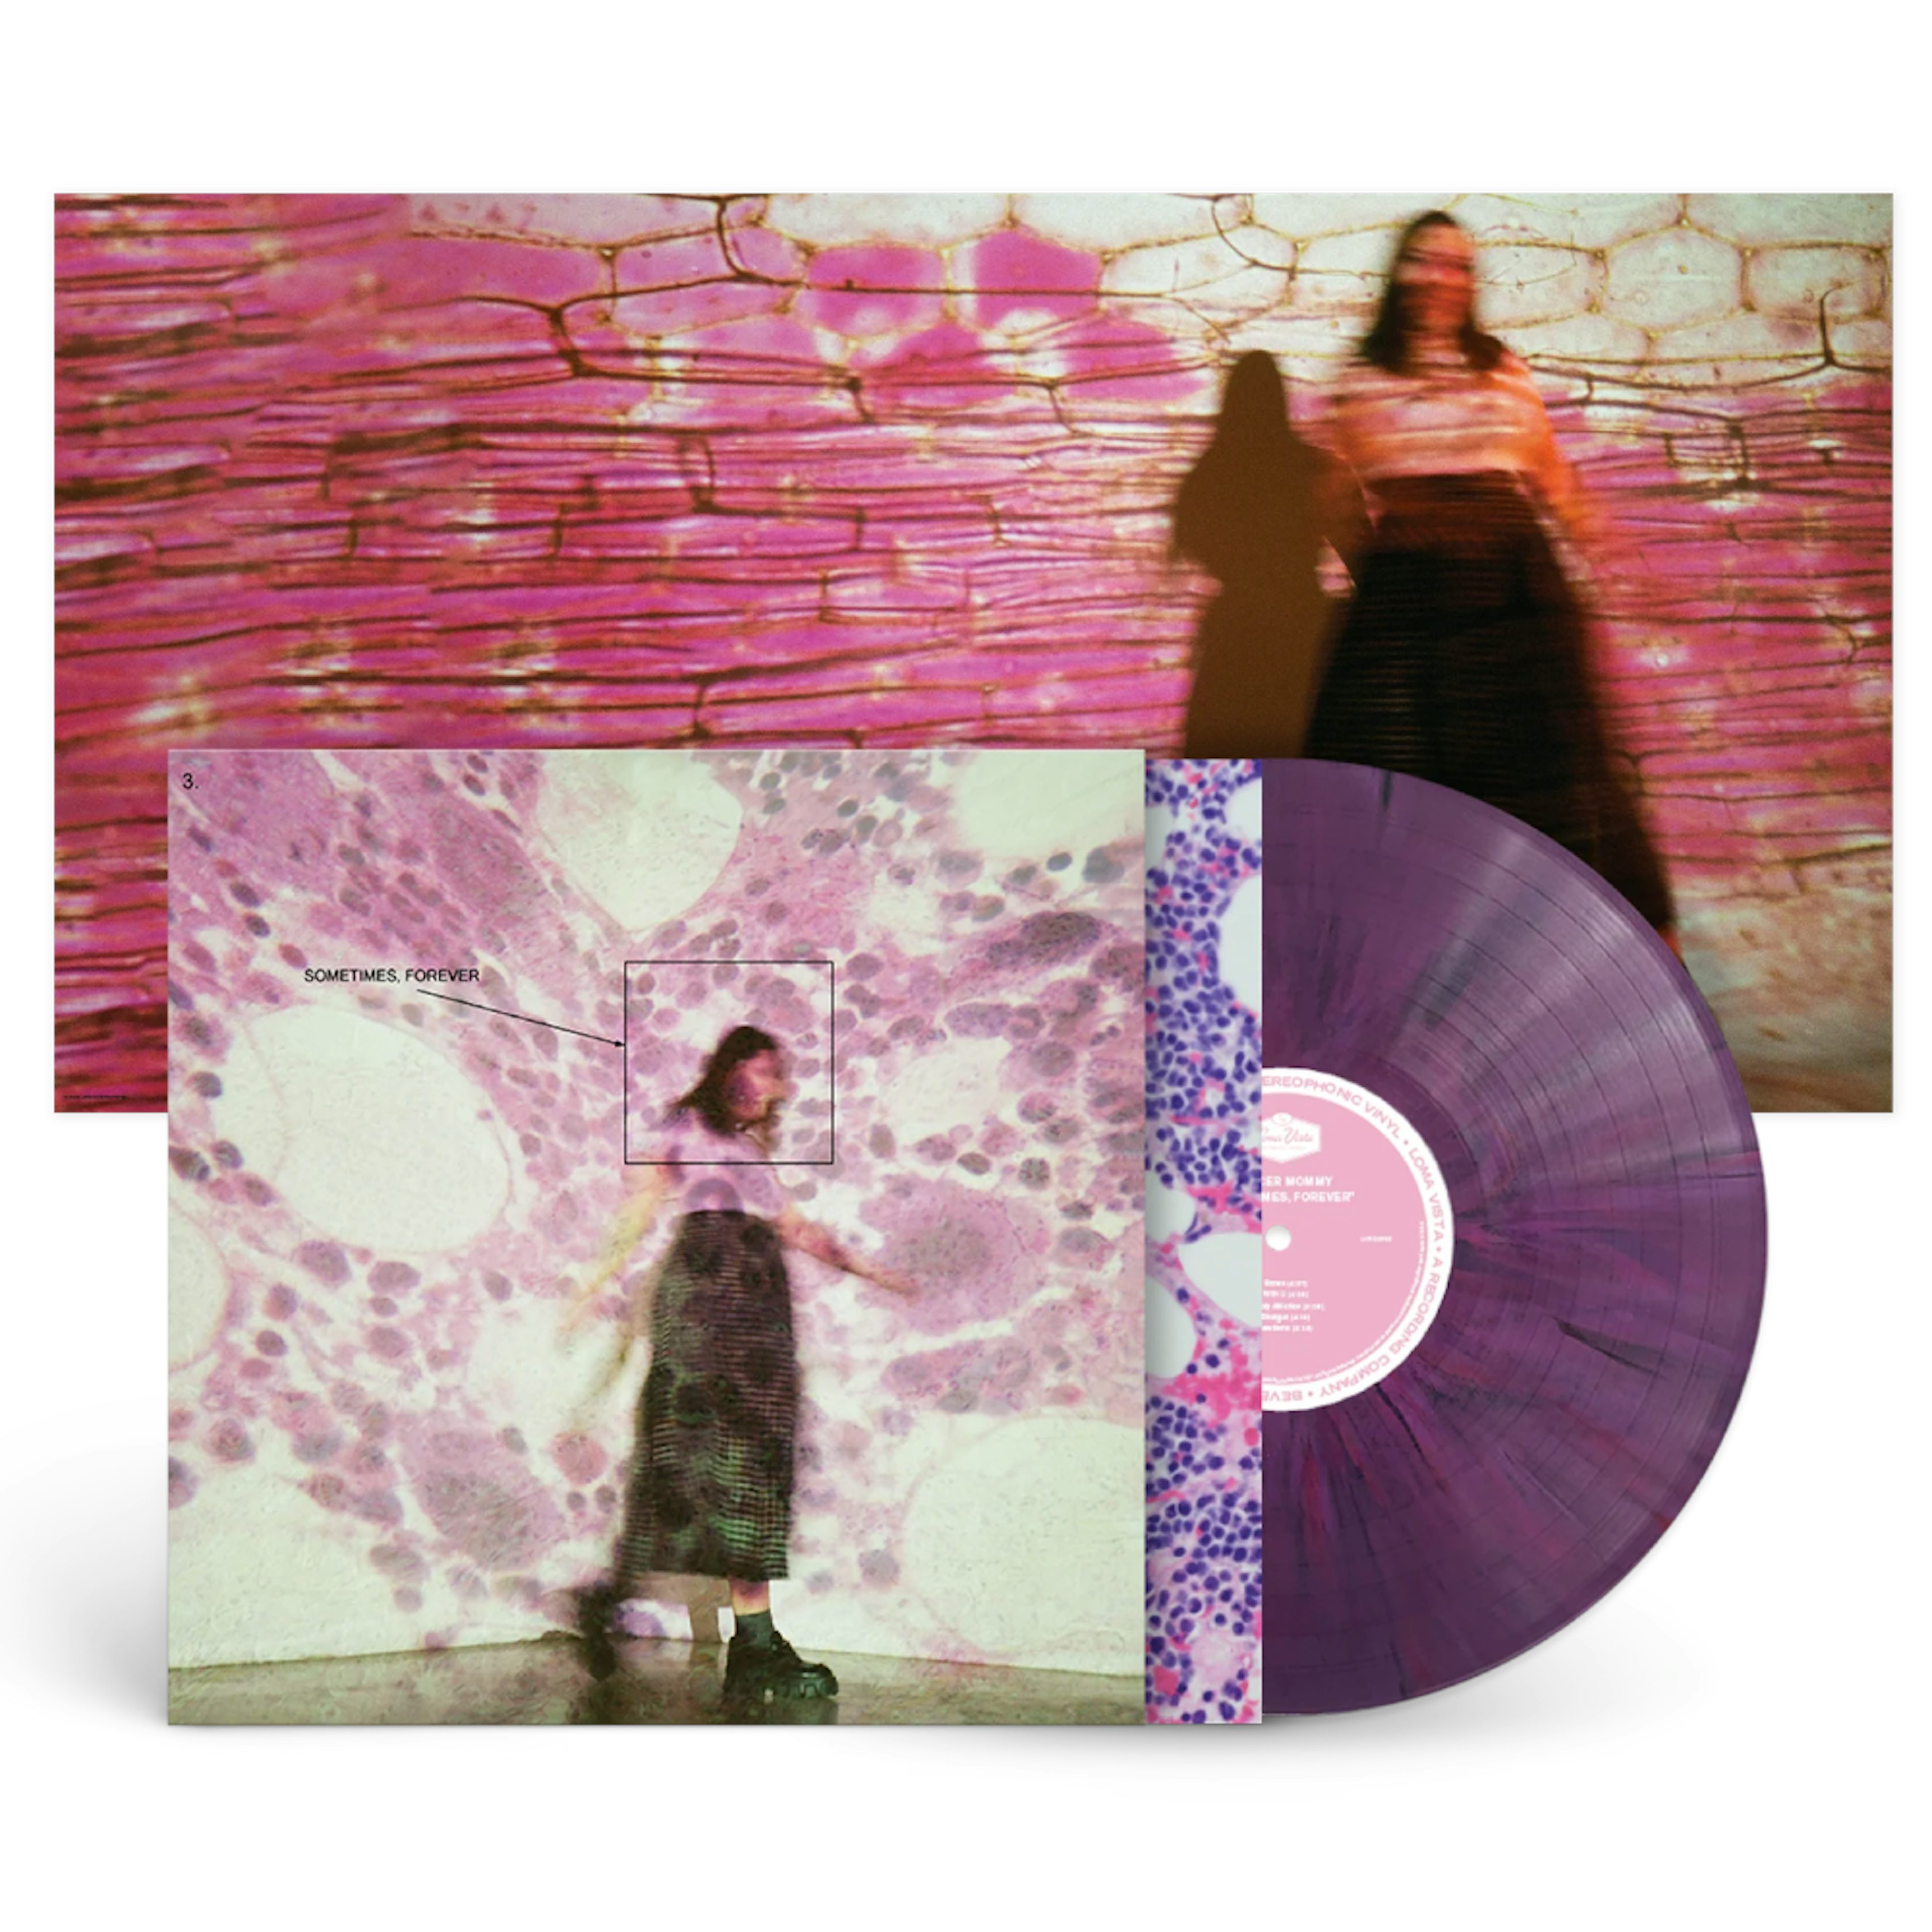 ufravigelige sofistikeret Kaptajn brie Soccer Mommy / Sometimes, Forever LP Limited Edition Purple Splatter Vinyl